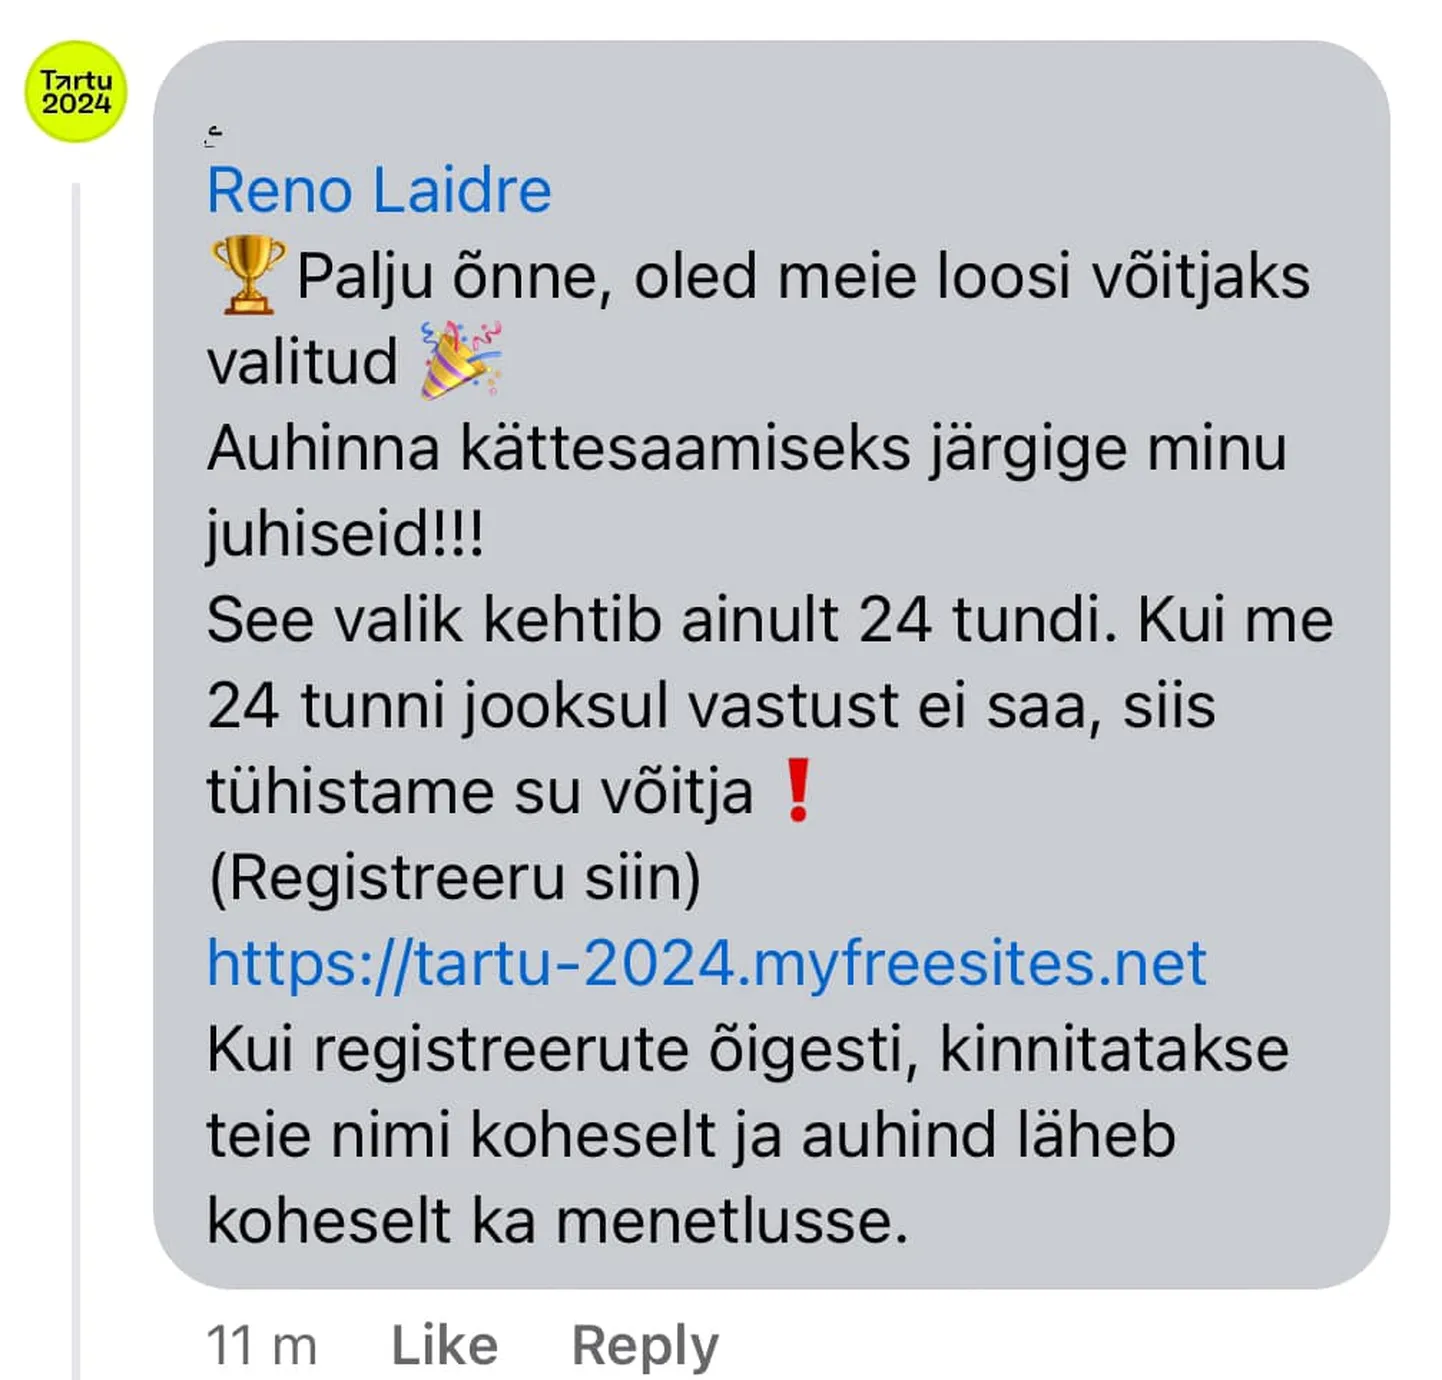 Üks «võitja», Tartu linnavolikogu aseesimees Reno Laidre tegi petuskeemi kommentaarist kuvatõmmise. Laidre tunnistas, et see nägi väga ehtne välja.